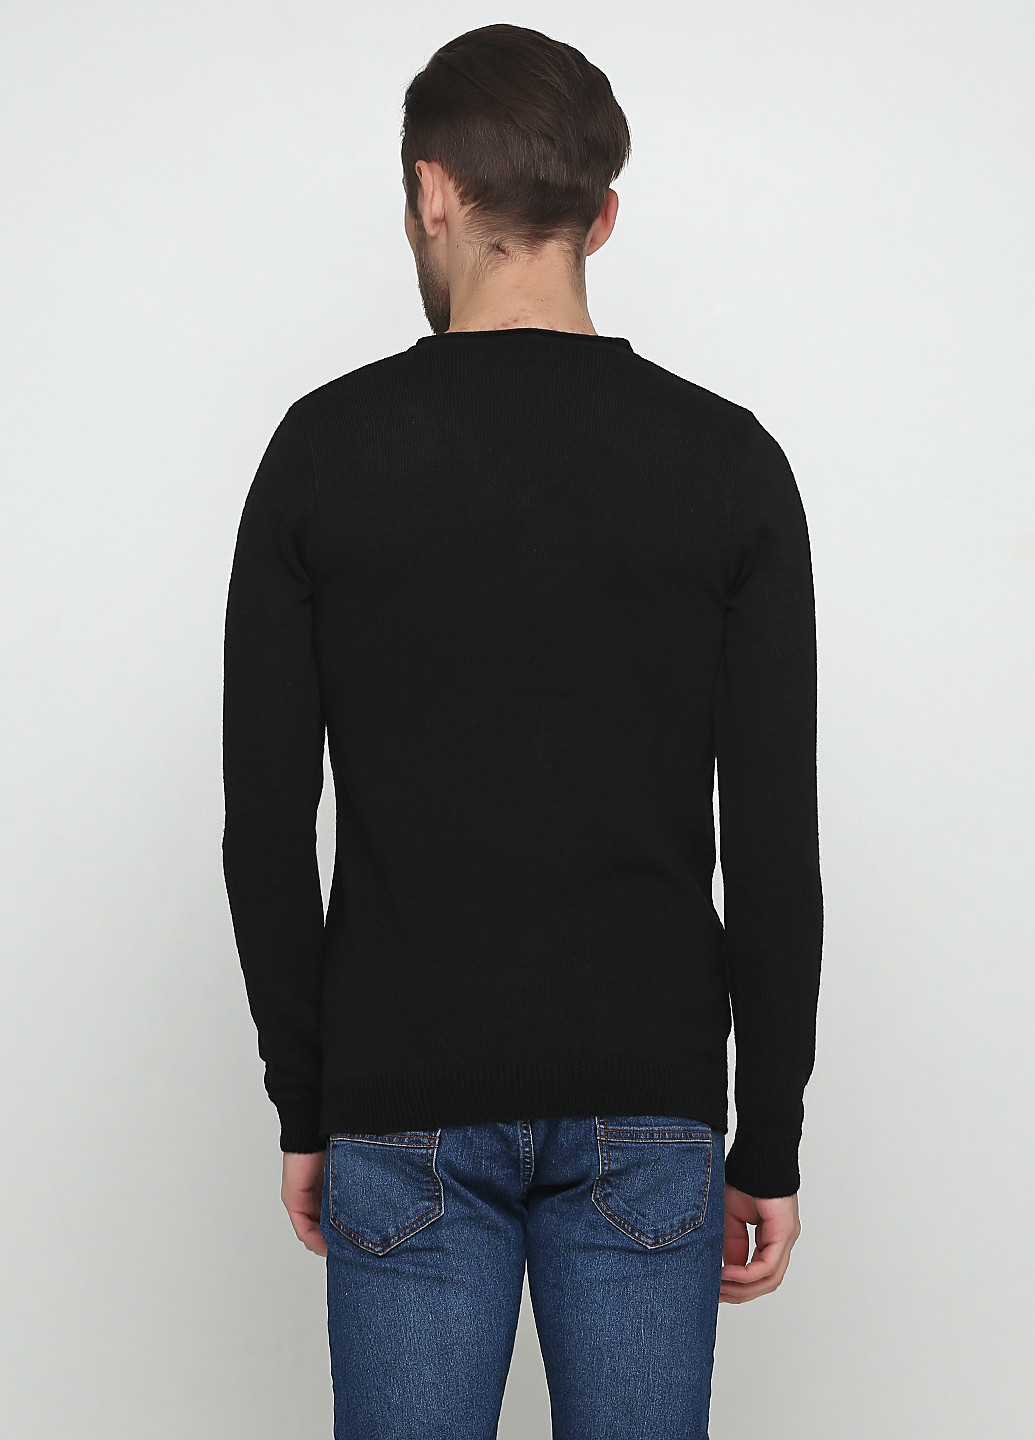 Черный демисезонный пуловер пуловер Xagon Man